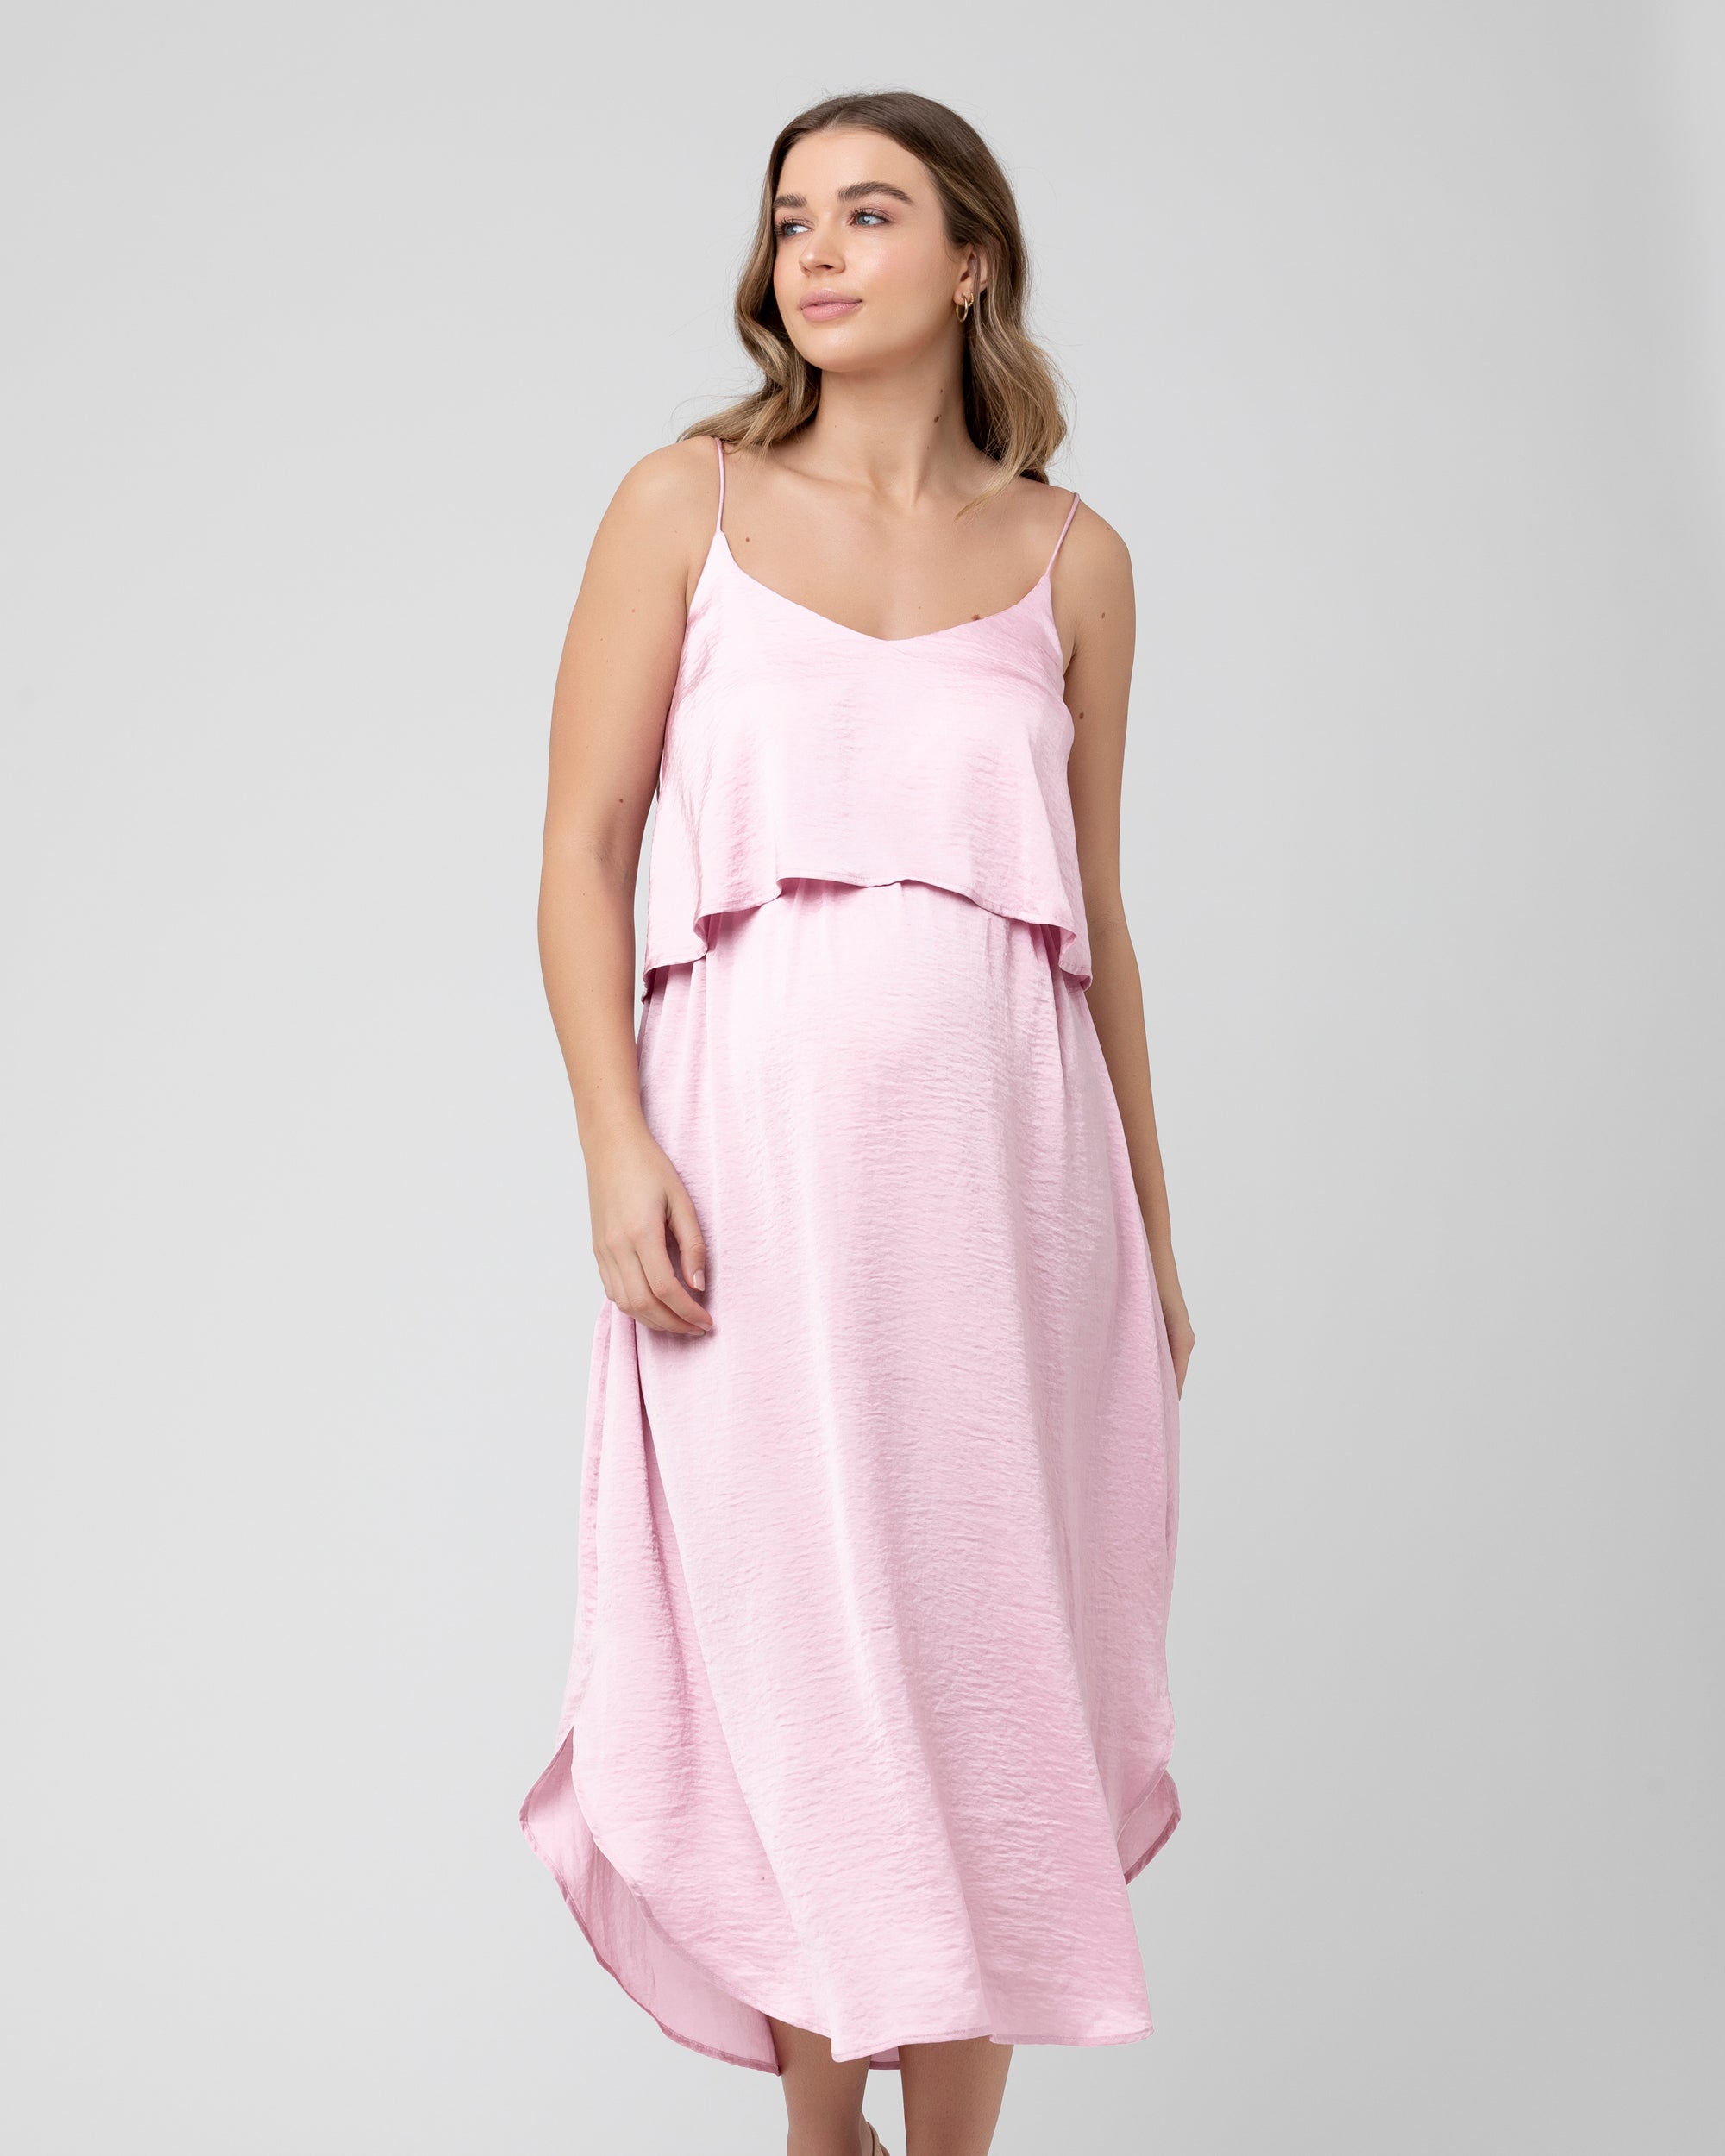 Nursing Slip Dress Pink